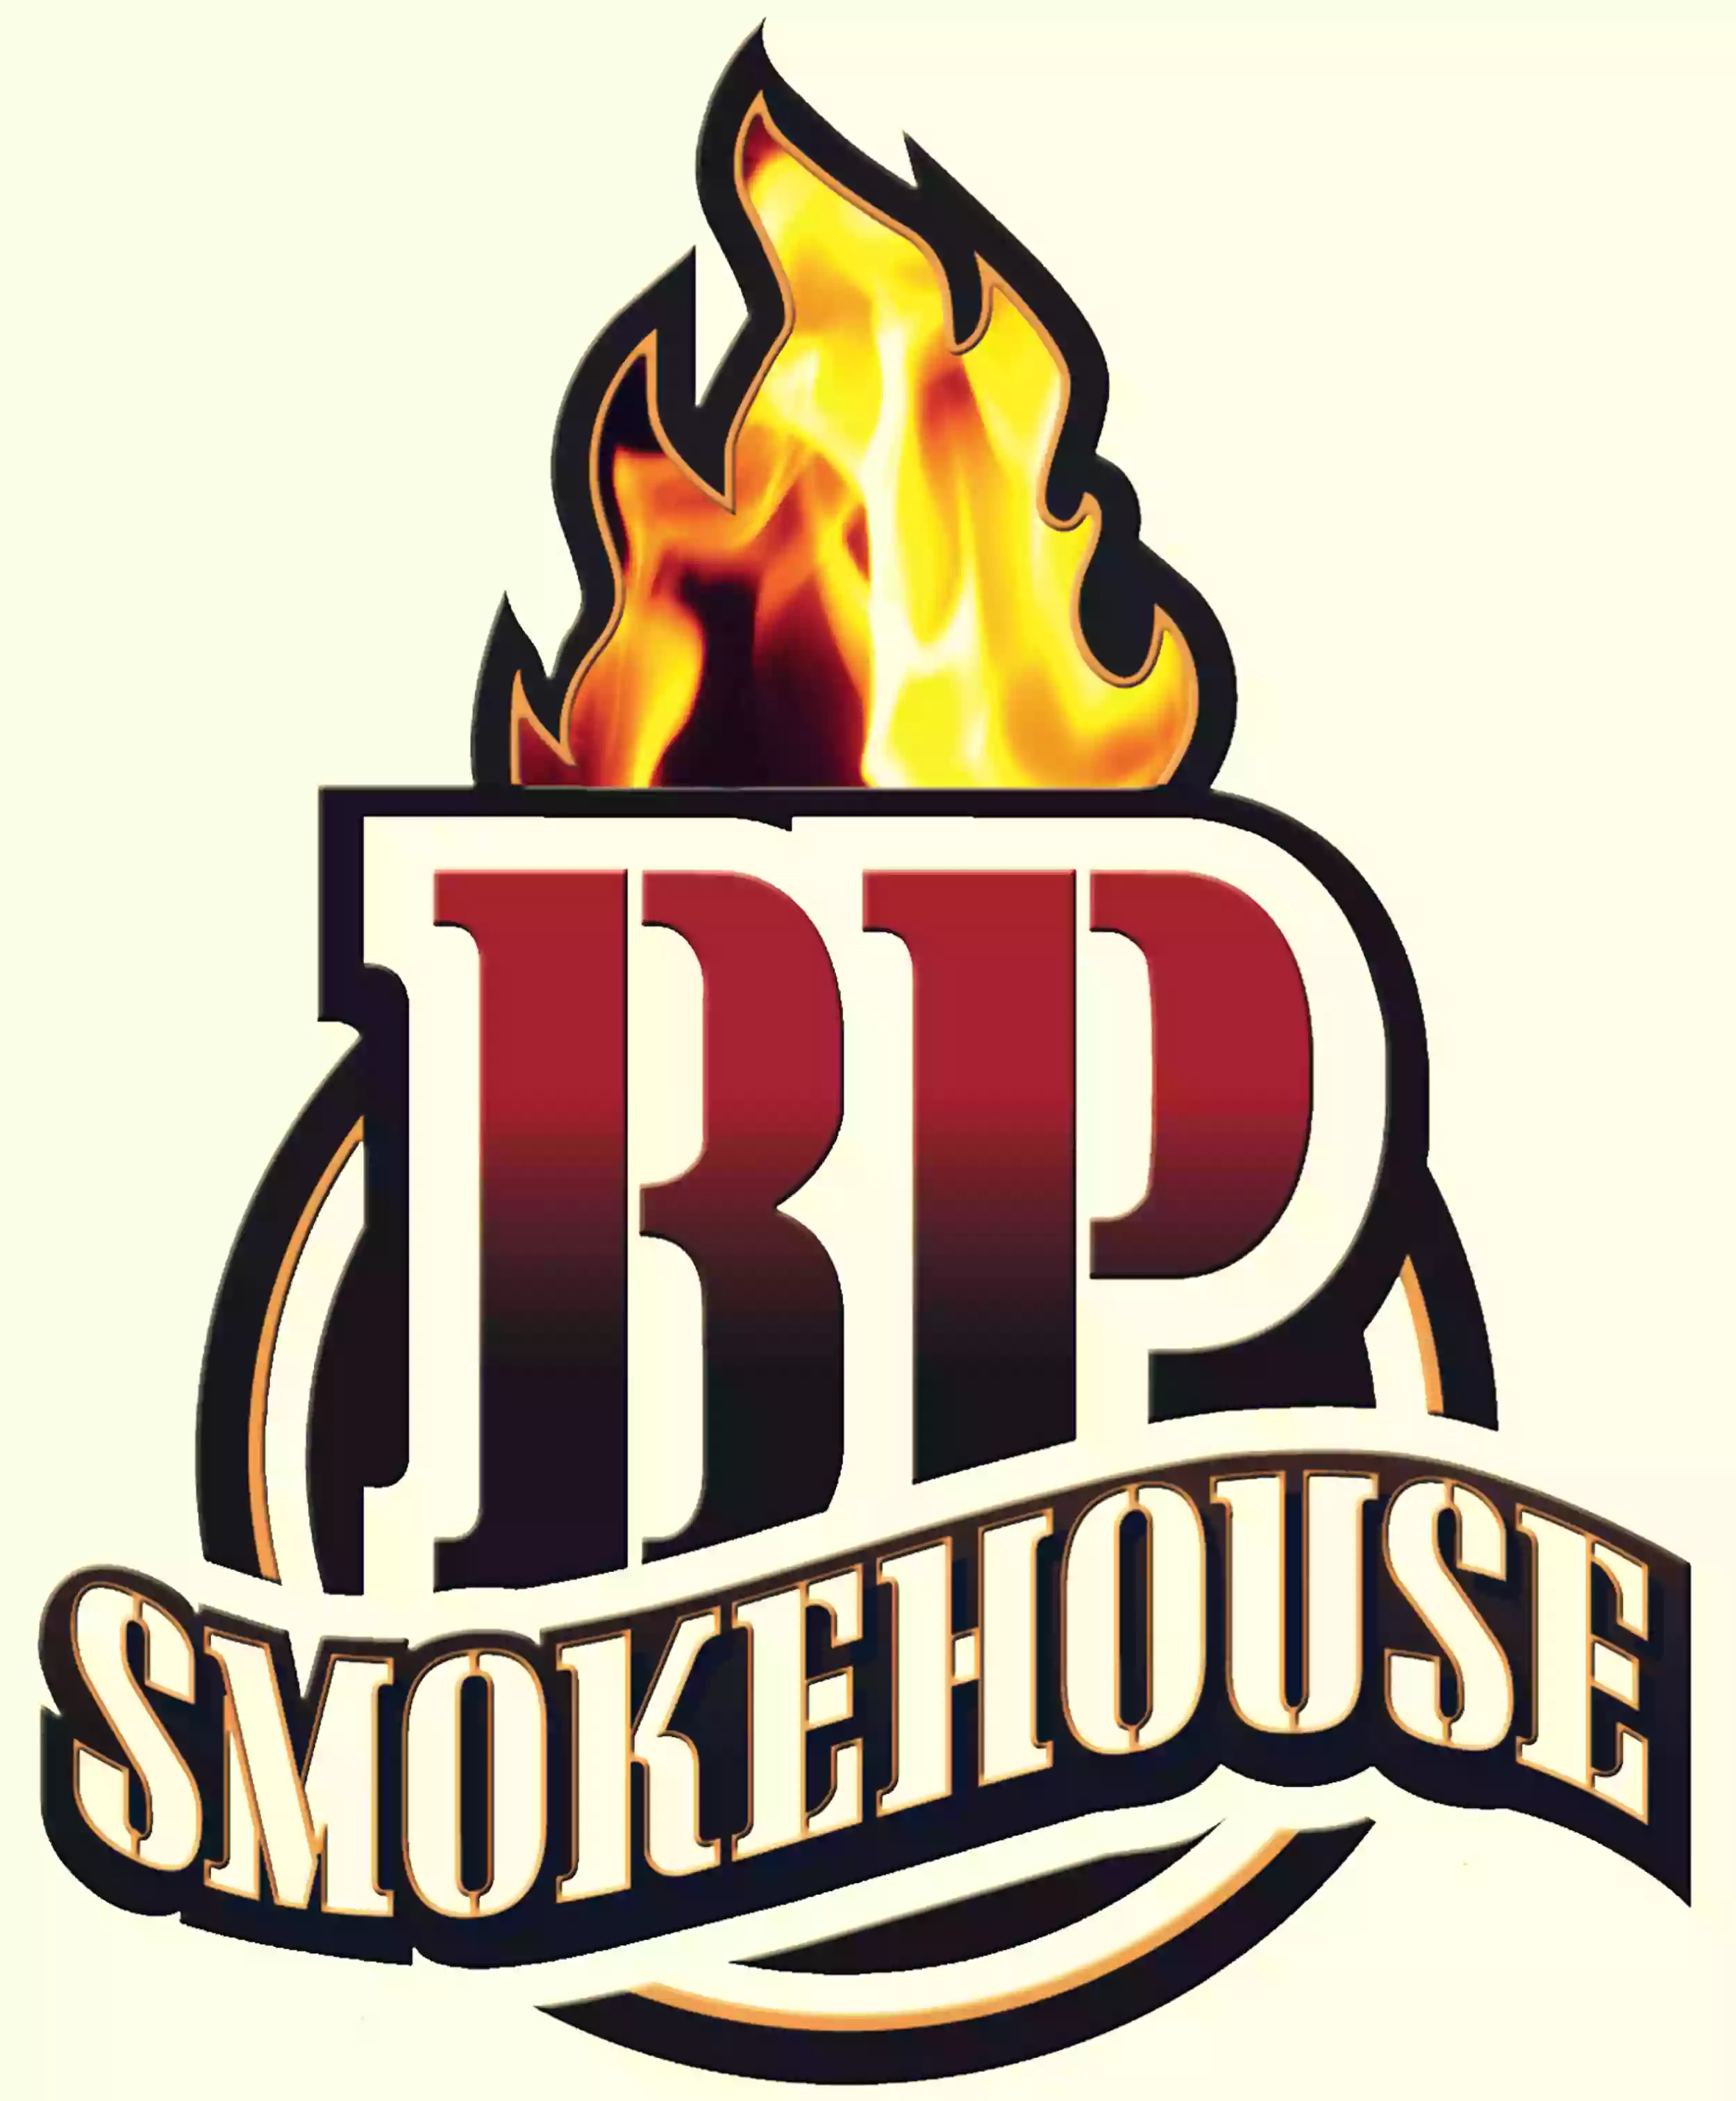 BP Smokehouse BBQ